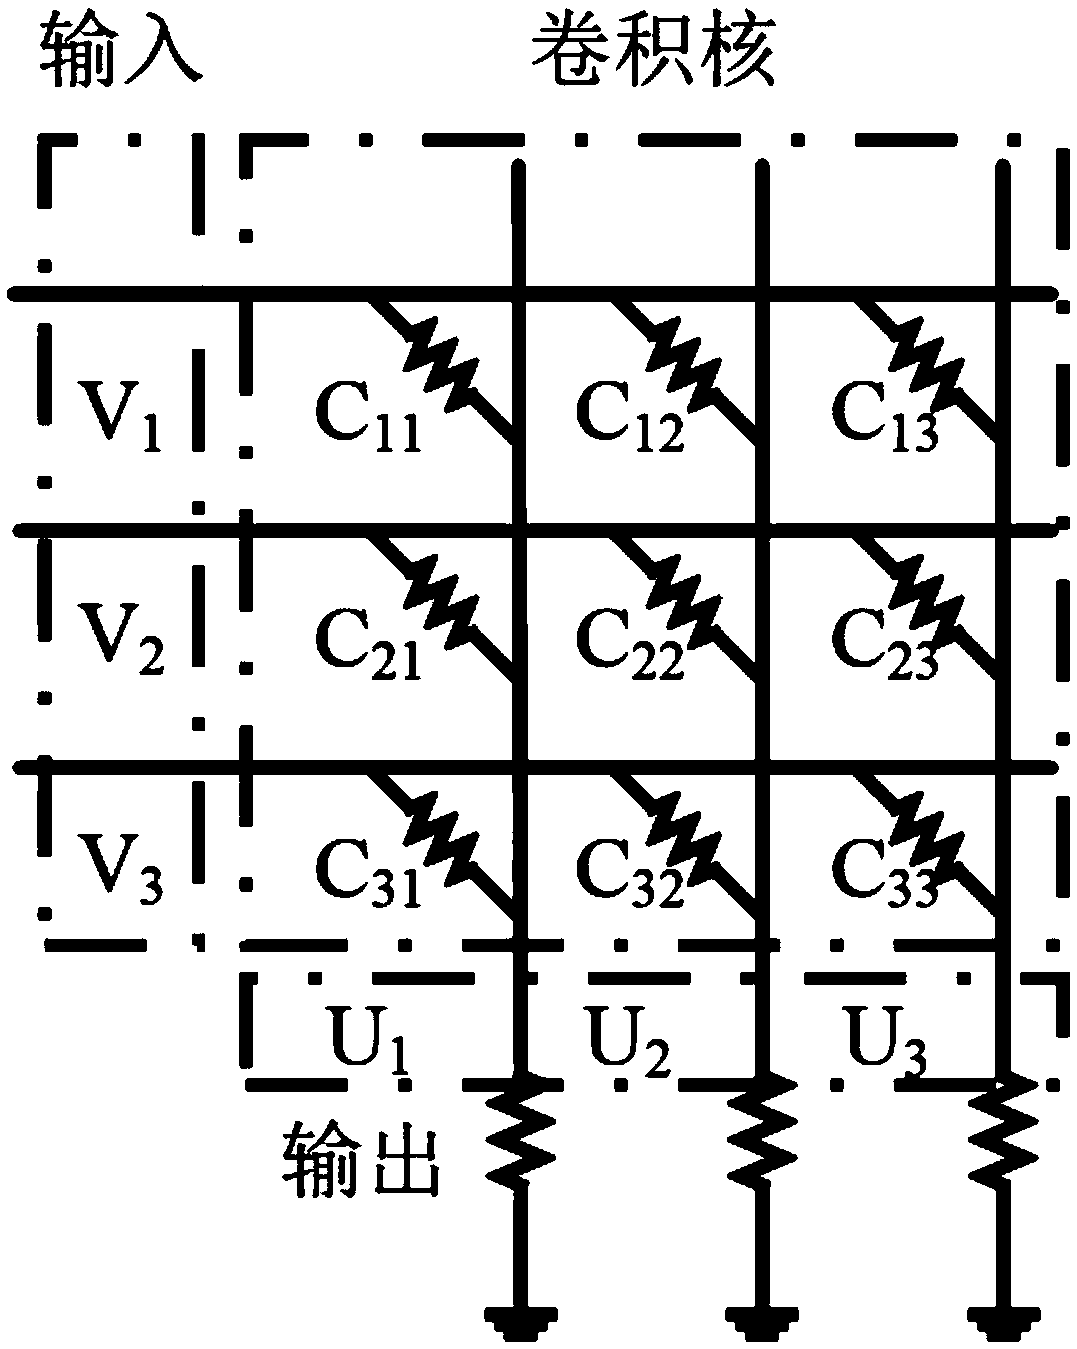 Speech recognition method base on memristor